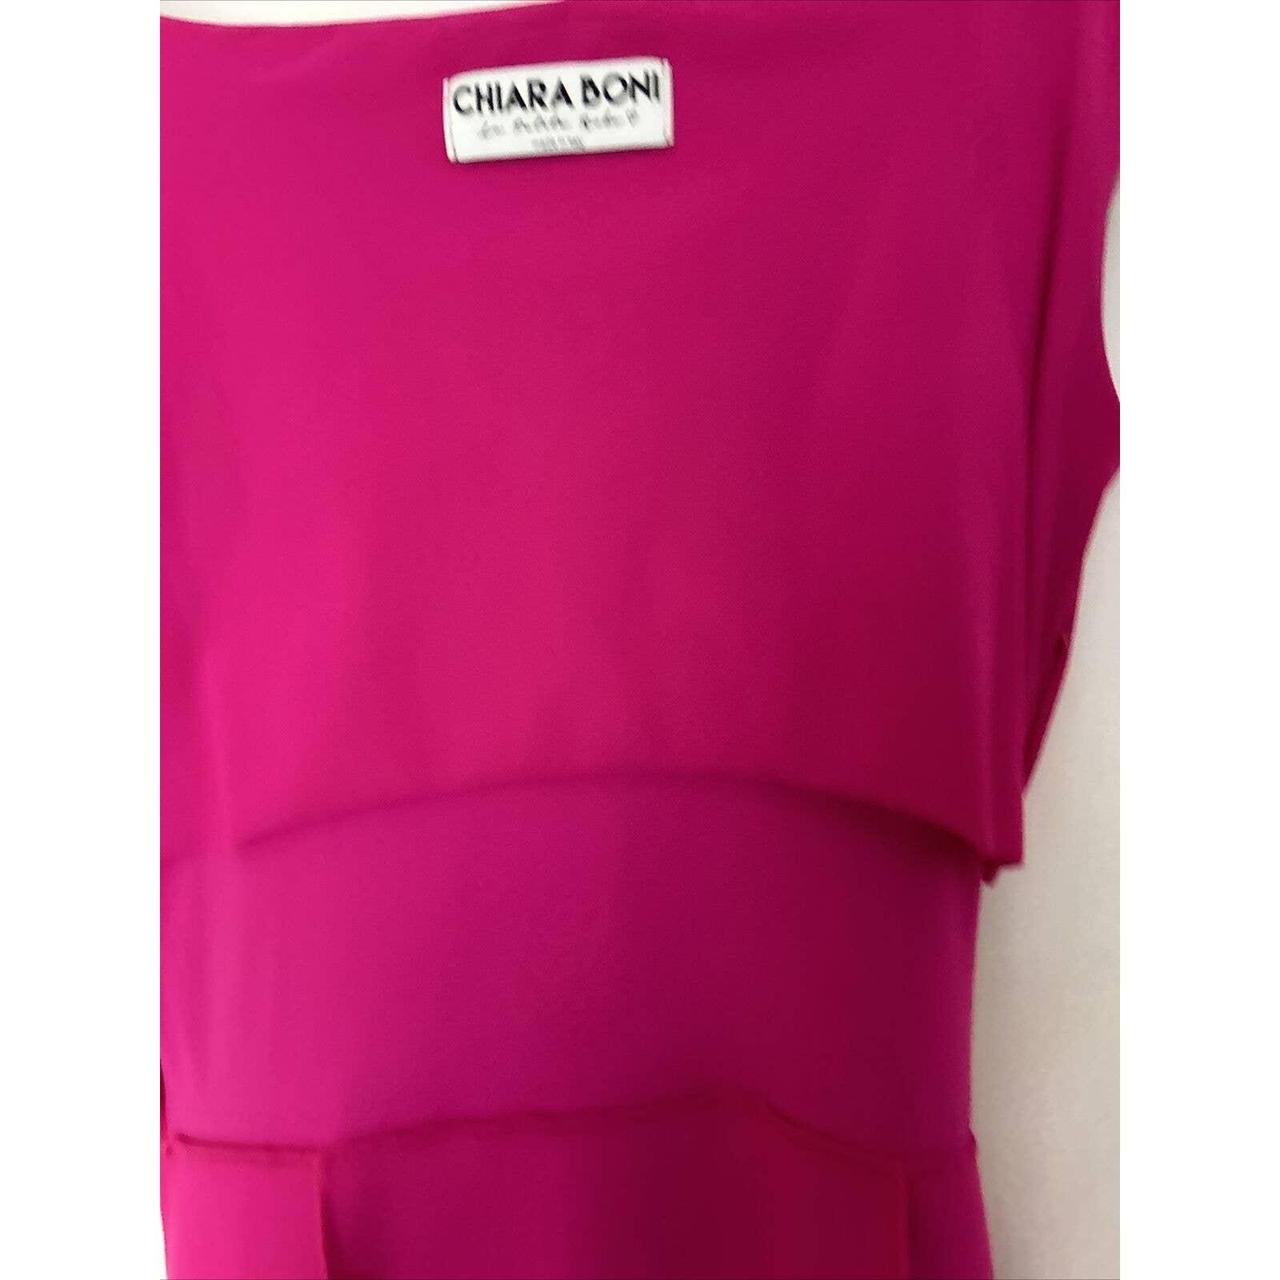 Chiara Boni La Petite Robe Women's Pink Dress (5)